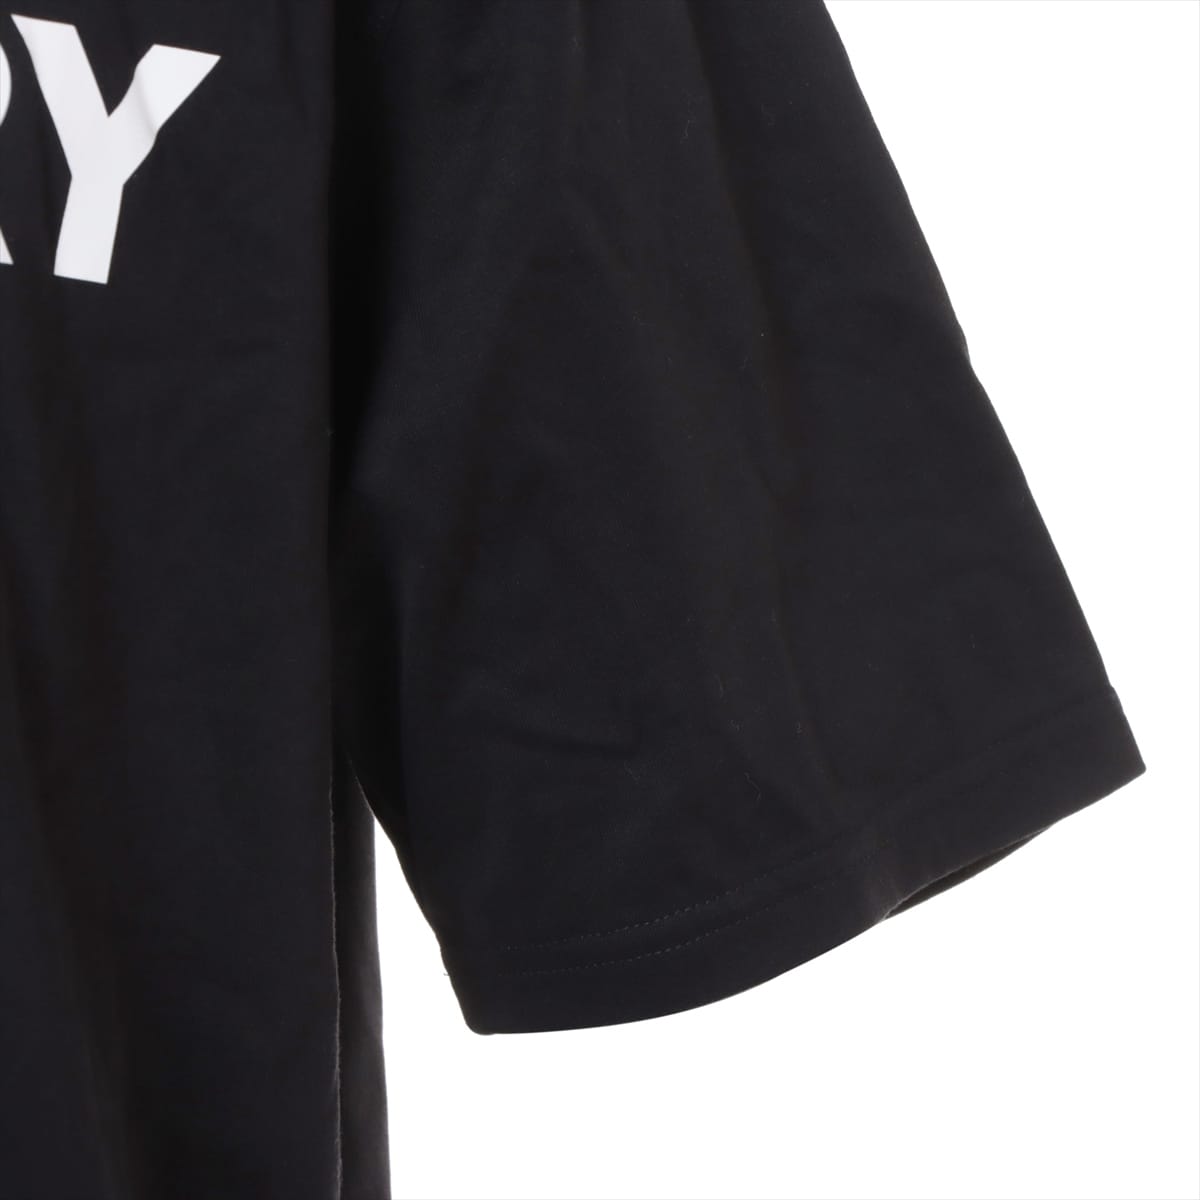 バーバリー コットン Tシャツ L メンズ ブラック  ティッシ期 8026016